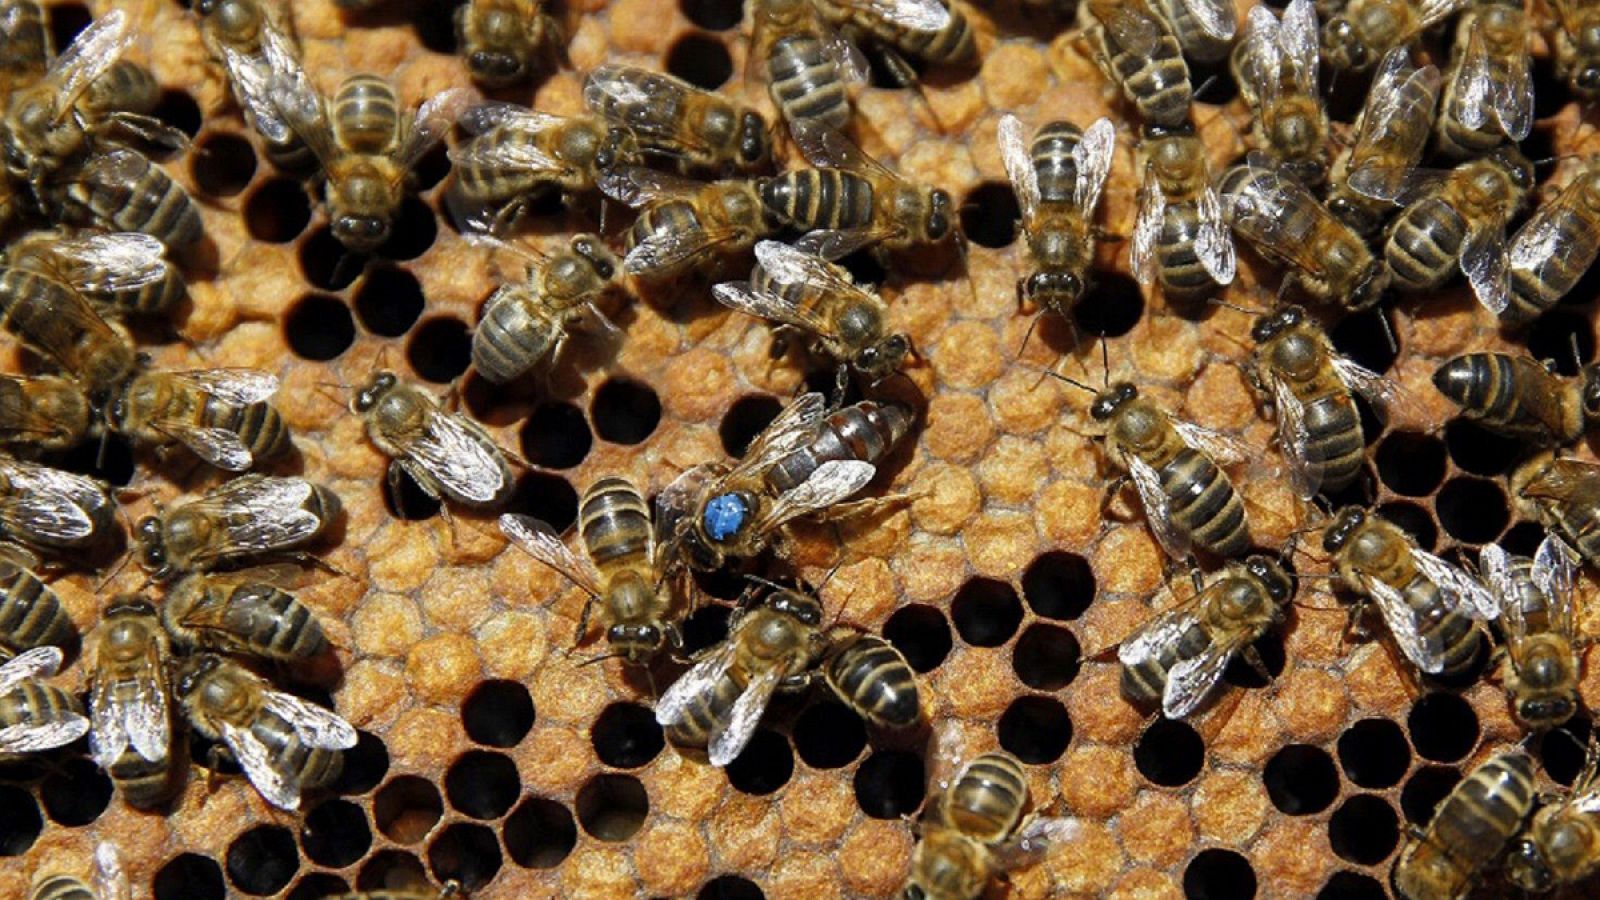 En España, según Greenpeace, están autorizados más de 300 insecticidas peligrosos para las abejas.